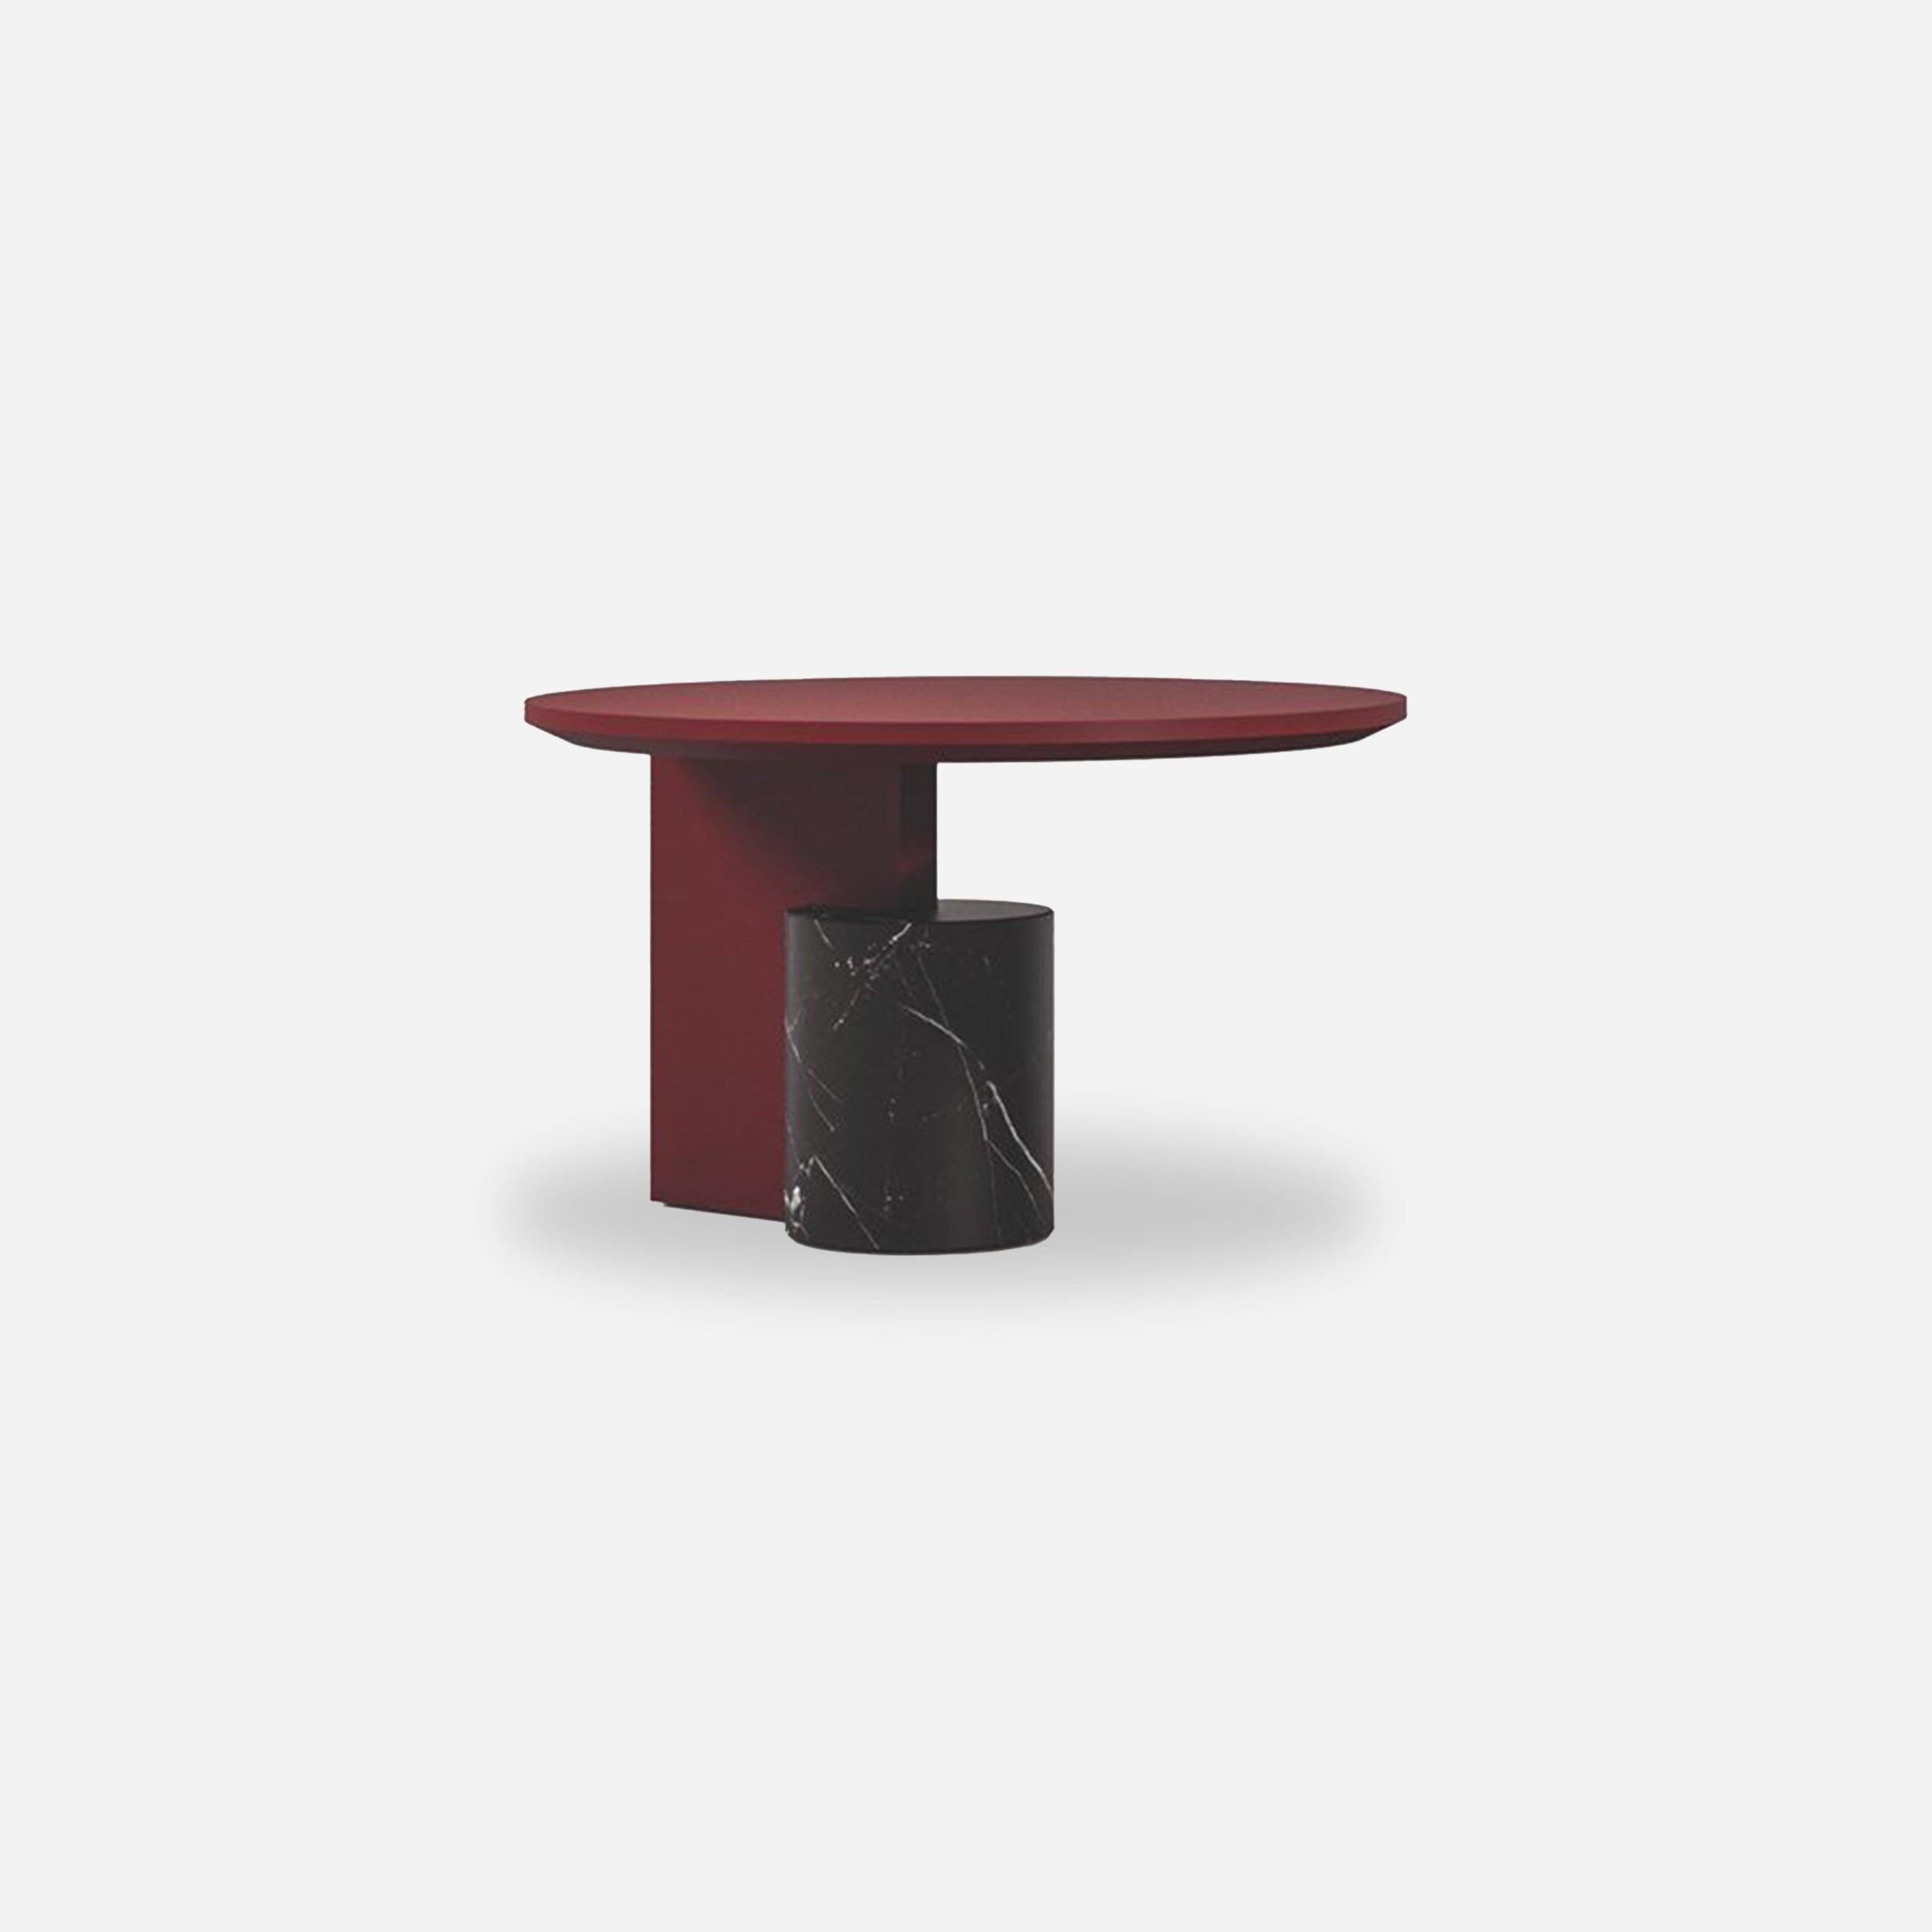 Sengu Low Table, entworfen von Patricia Urquiola.
Hergestellt von Cassina (Italien).

DESIGN-NIEDRIGTISCHE
Eine Kollektion von drei Designer-Niedrigtischen von Patricia Urquiola, die in Kombination mit dem gleichnamigen Sofa die Antwort auf jeden